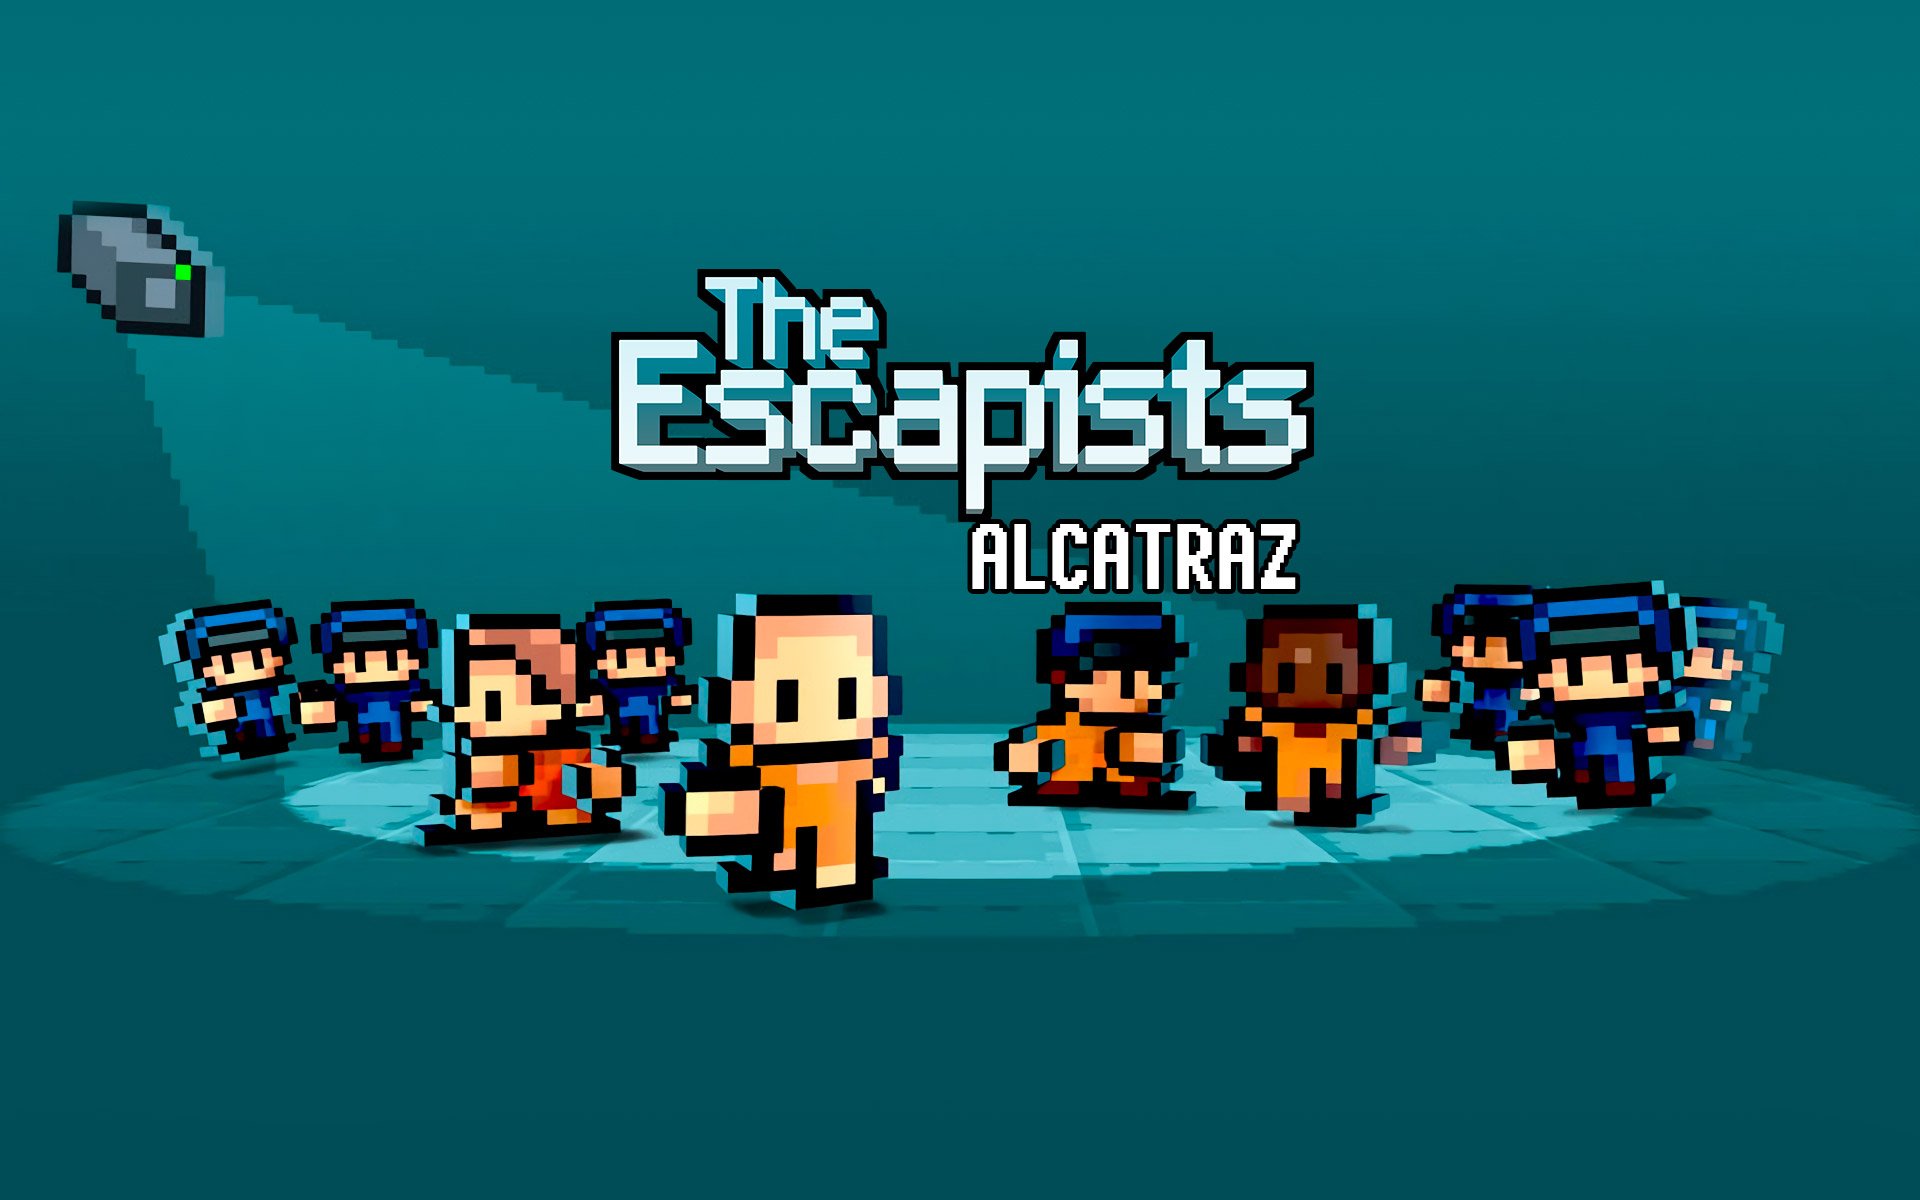 The Escapists: Alcatraz por R$ 4.29